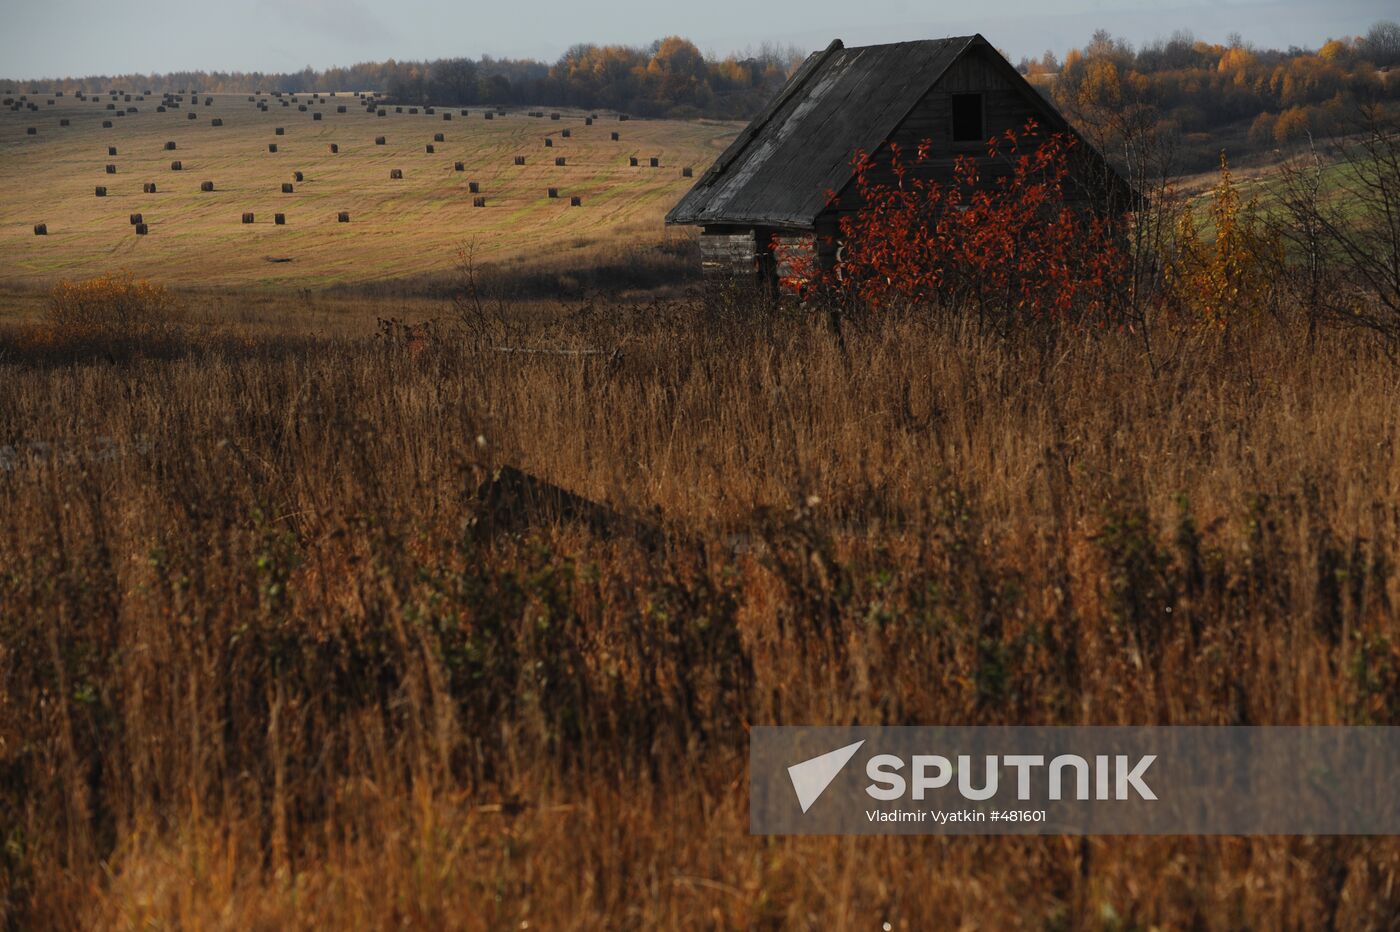 Autumn in Vladimir Region